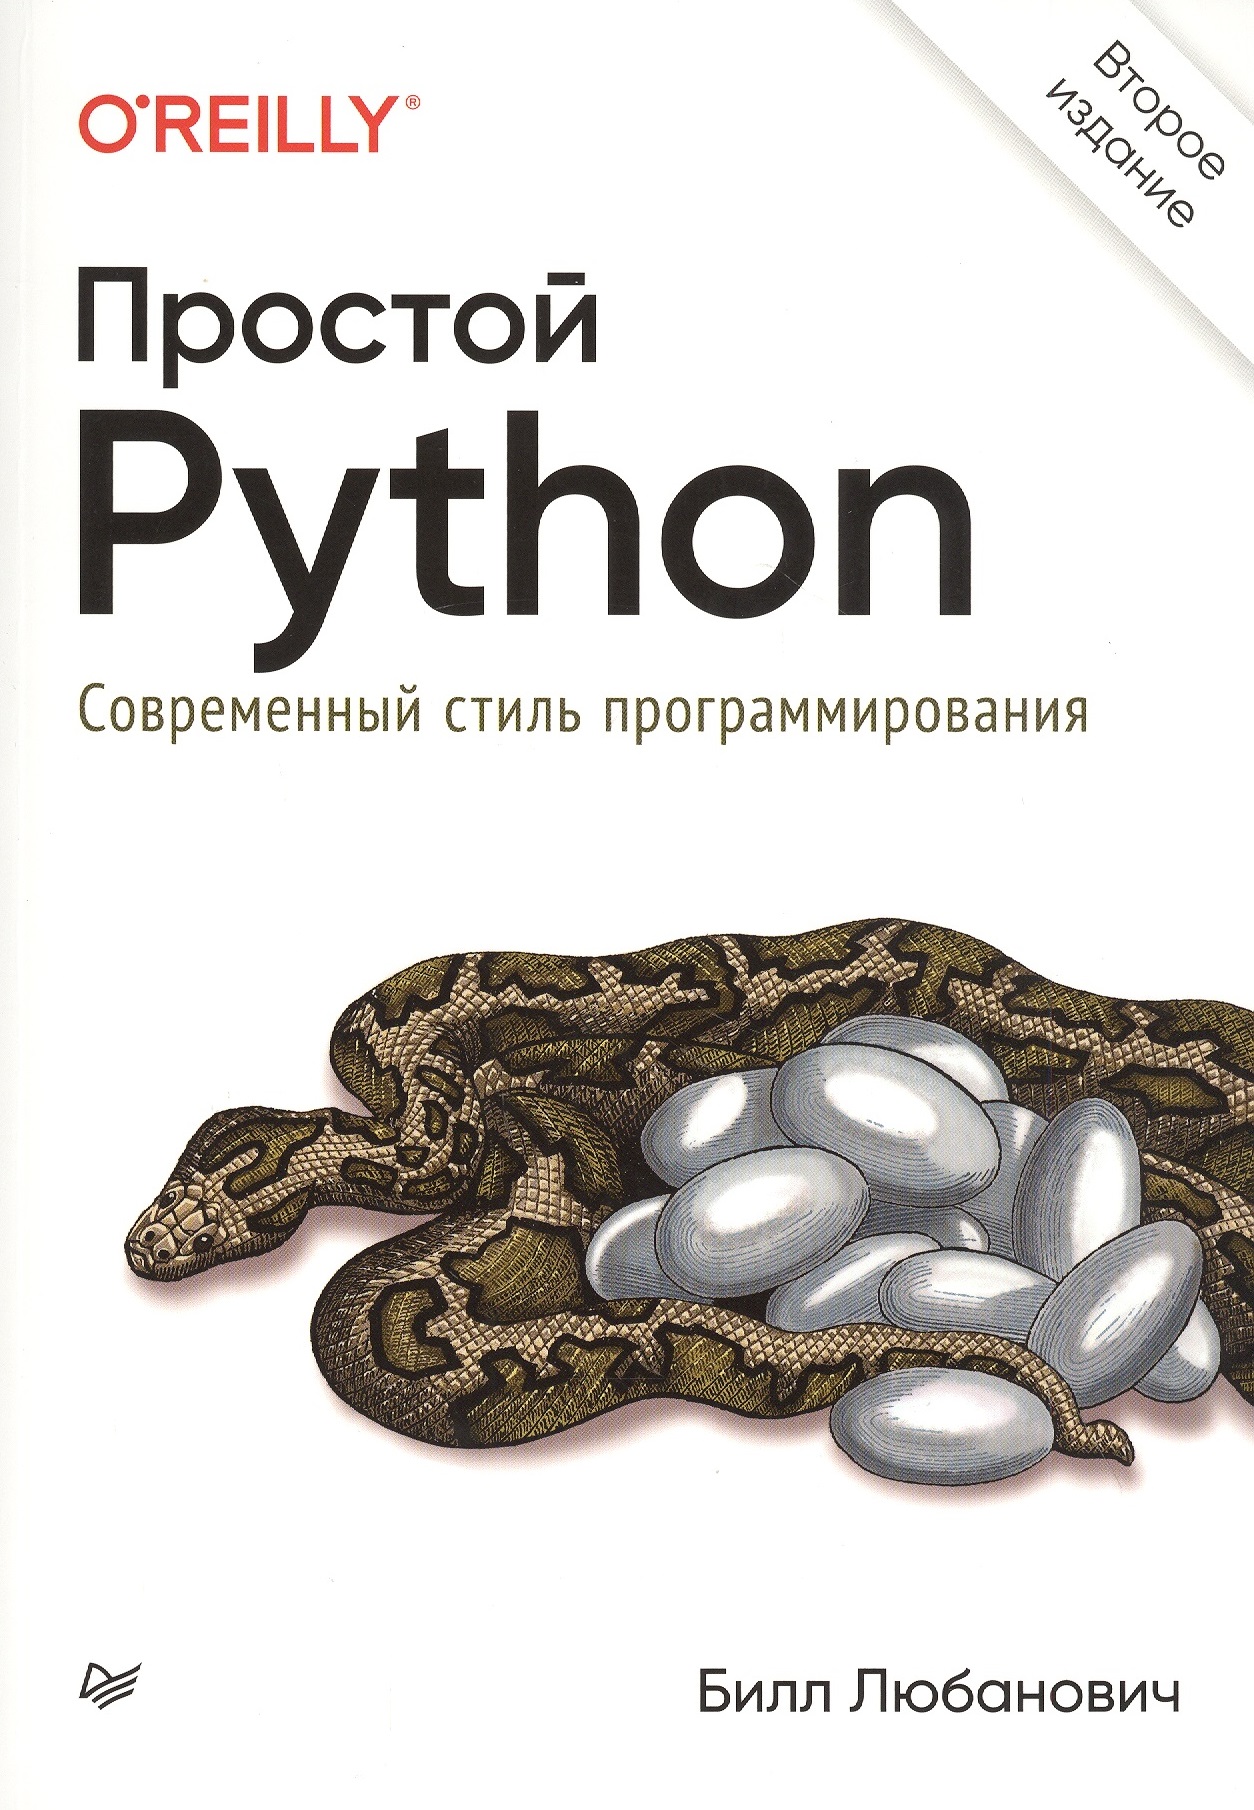 адельштайн том любанович билл системное администрирование в linux Любанович Билл Простой Python. Современный стиль программирования